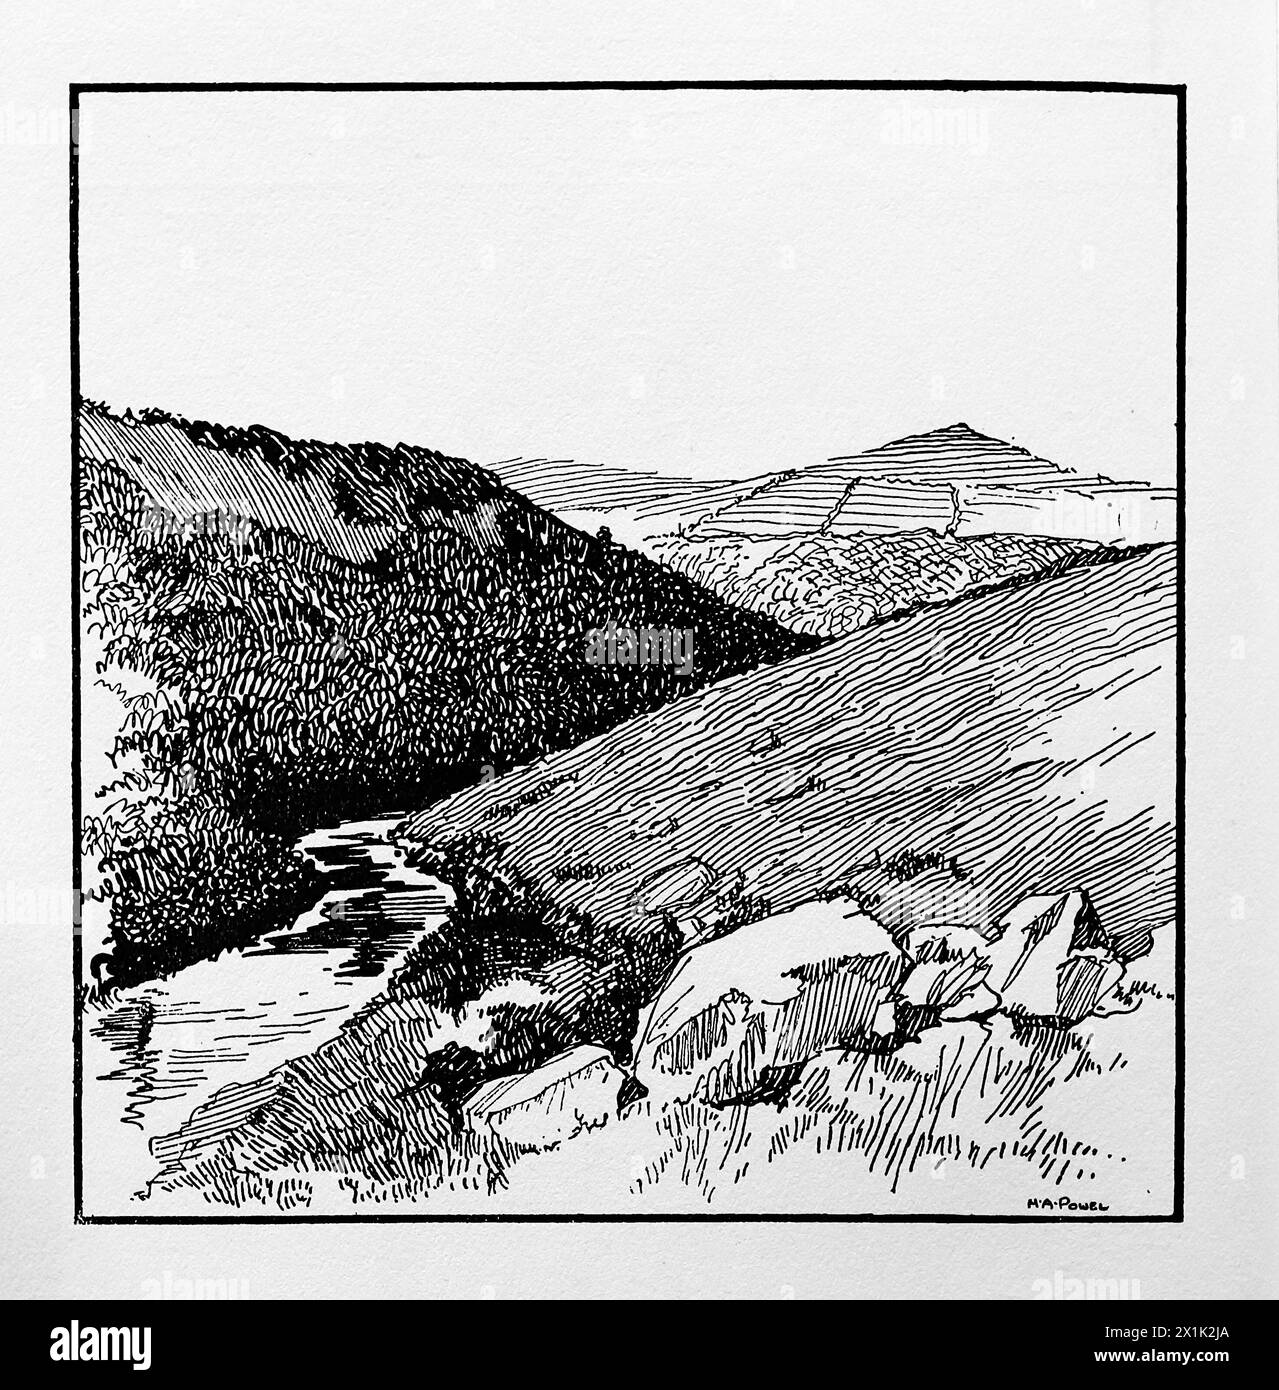 Dartmoor, eine Landschaft von H. A. Powell. Aus einer Reihe von Illustrationen der englischen Landschaft, die erstmals 1924 von Great Western Railways veröffentlicht wurden. Stockfoto